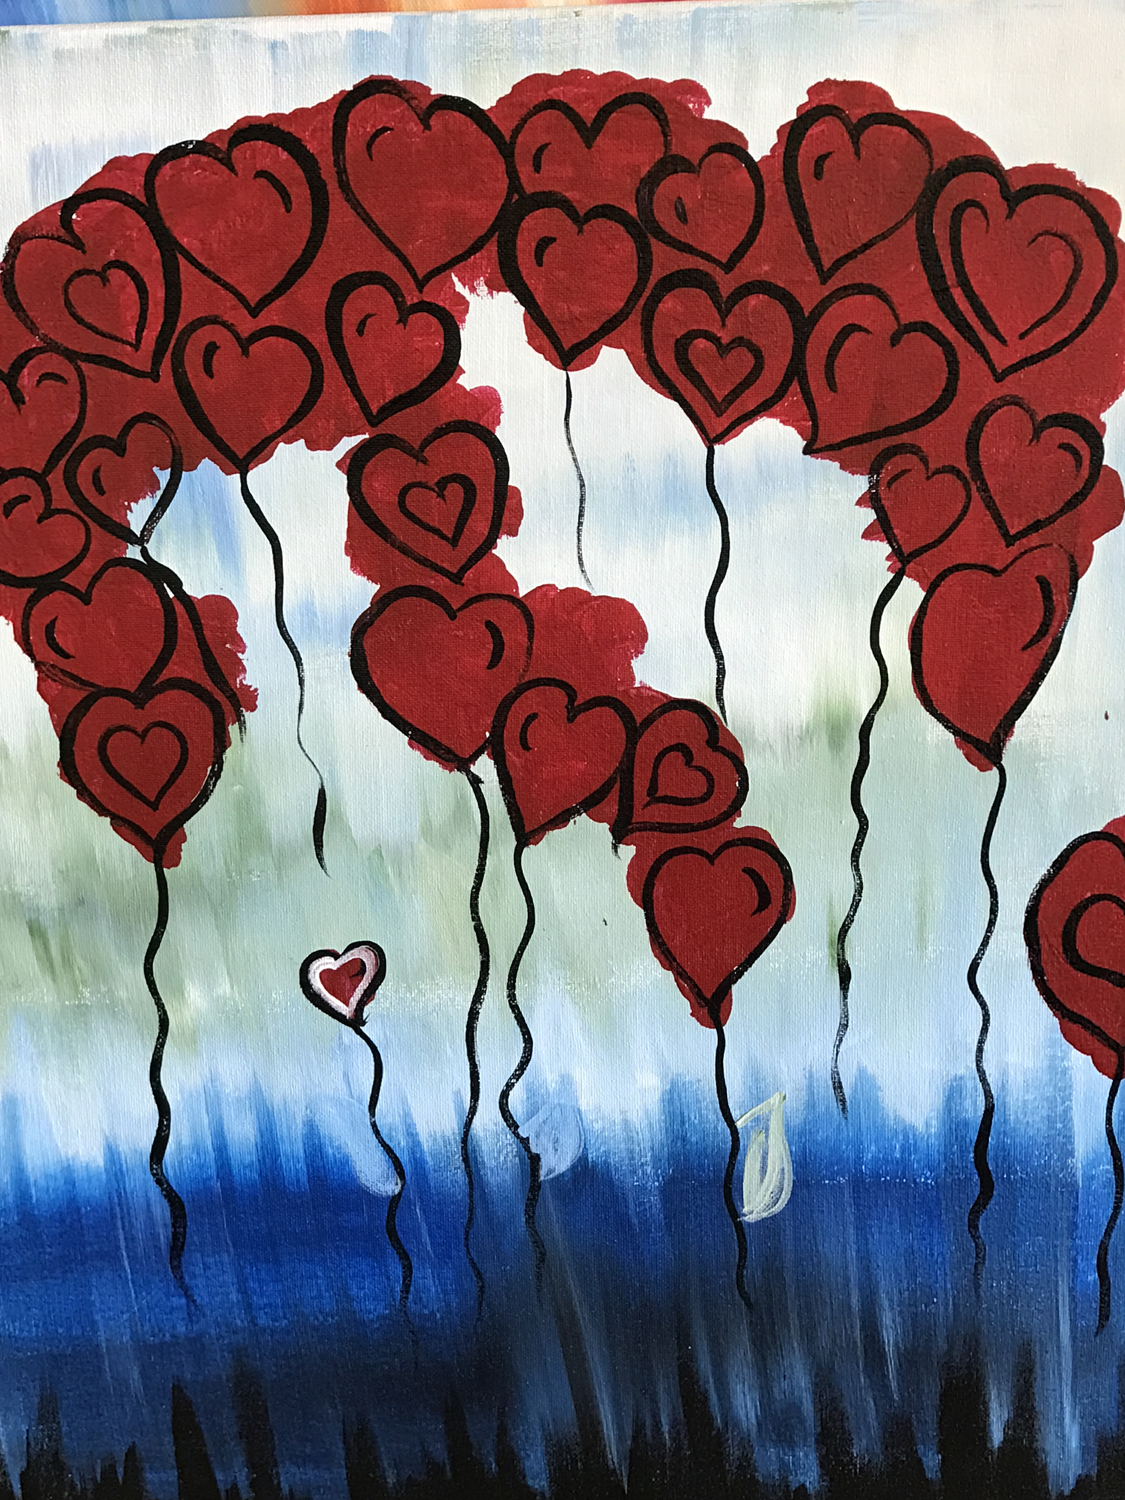 In Studio – Heart Balloons